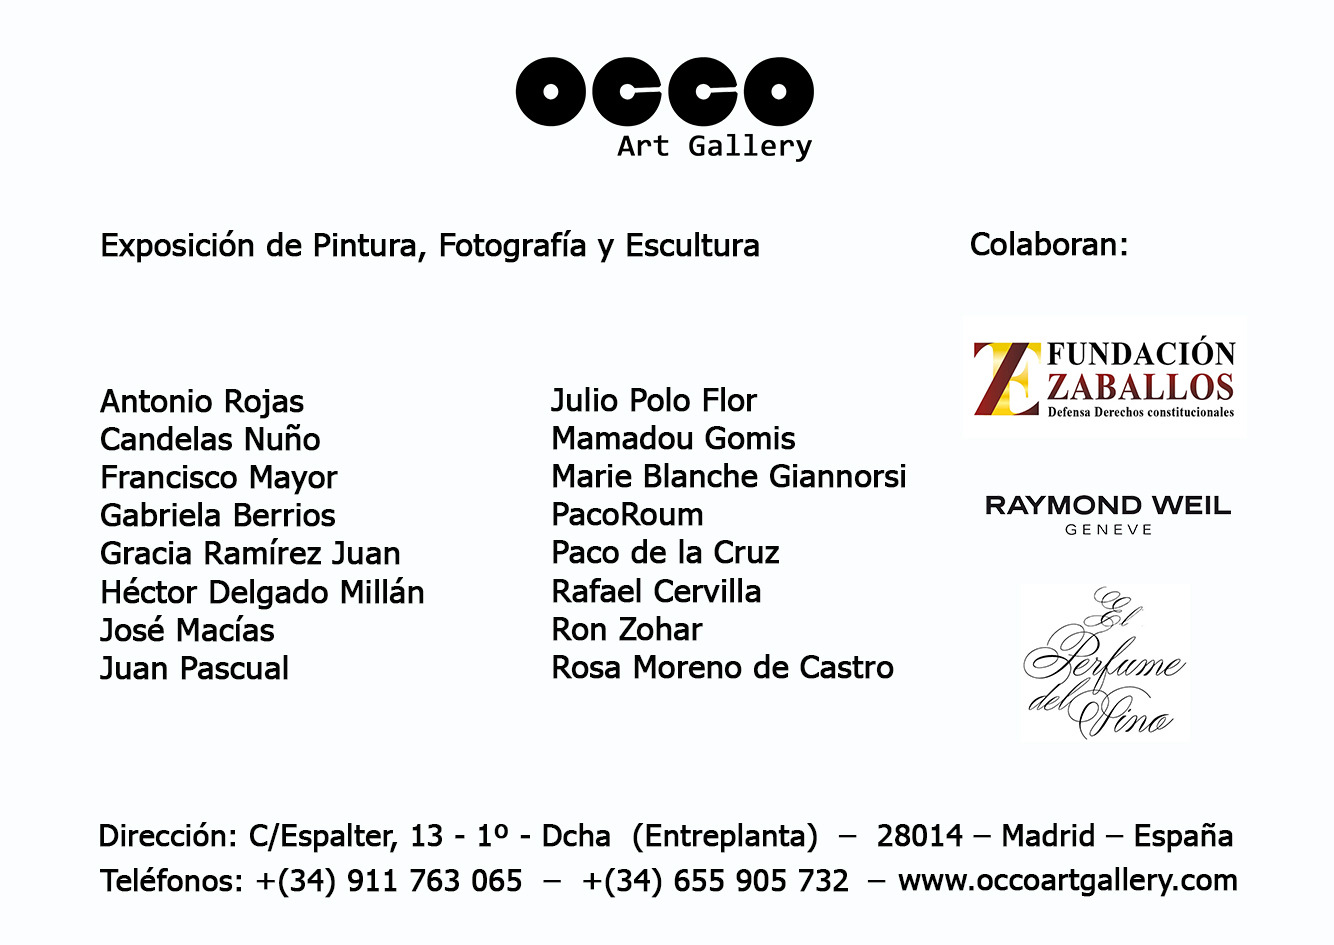 RENTRÉE, exposición de pintura, fotografía y escultura en OCCO Art Gallery, Calle Espalter, 13 - Madrid. Del 14 al 30 de septiembre de 2023.